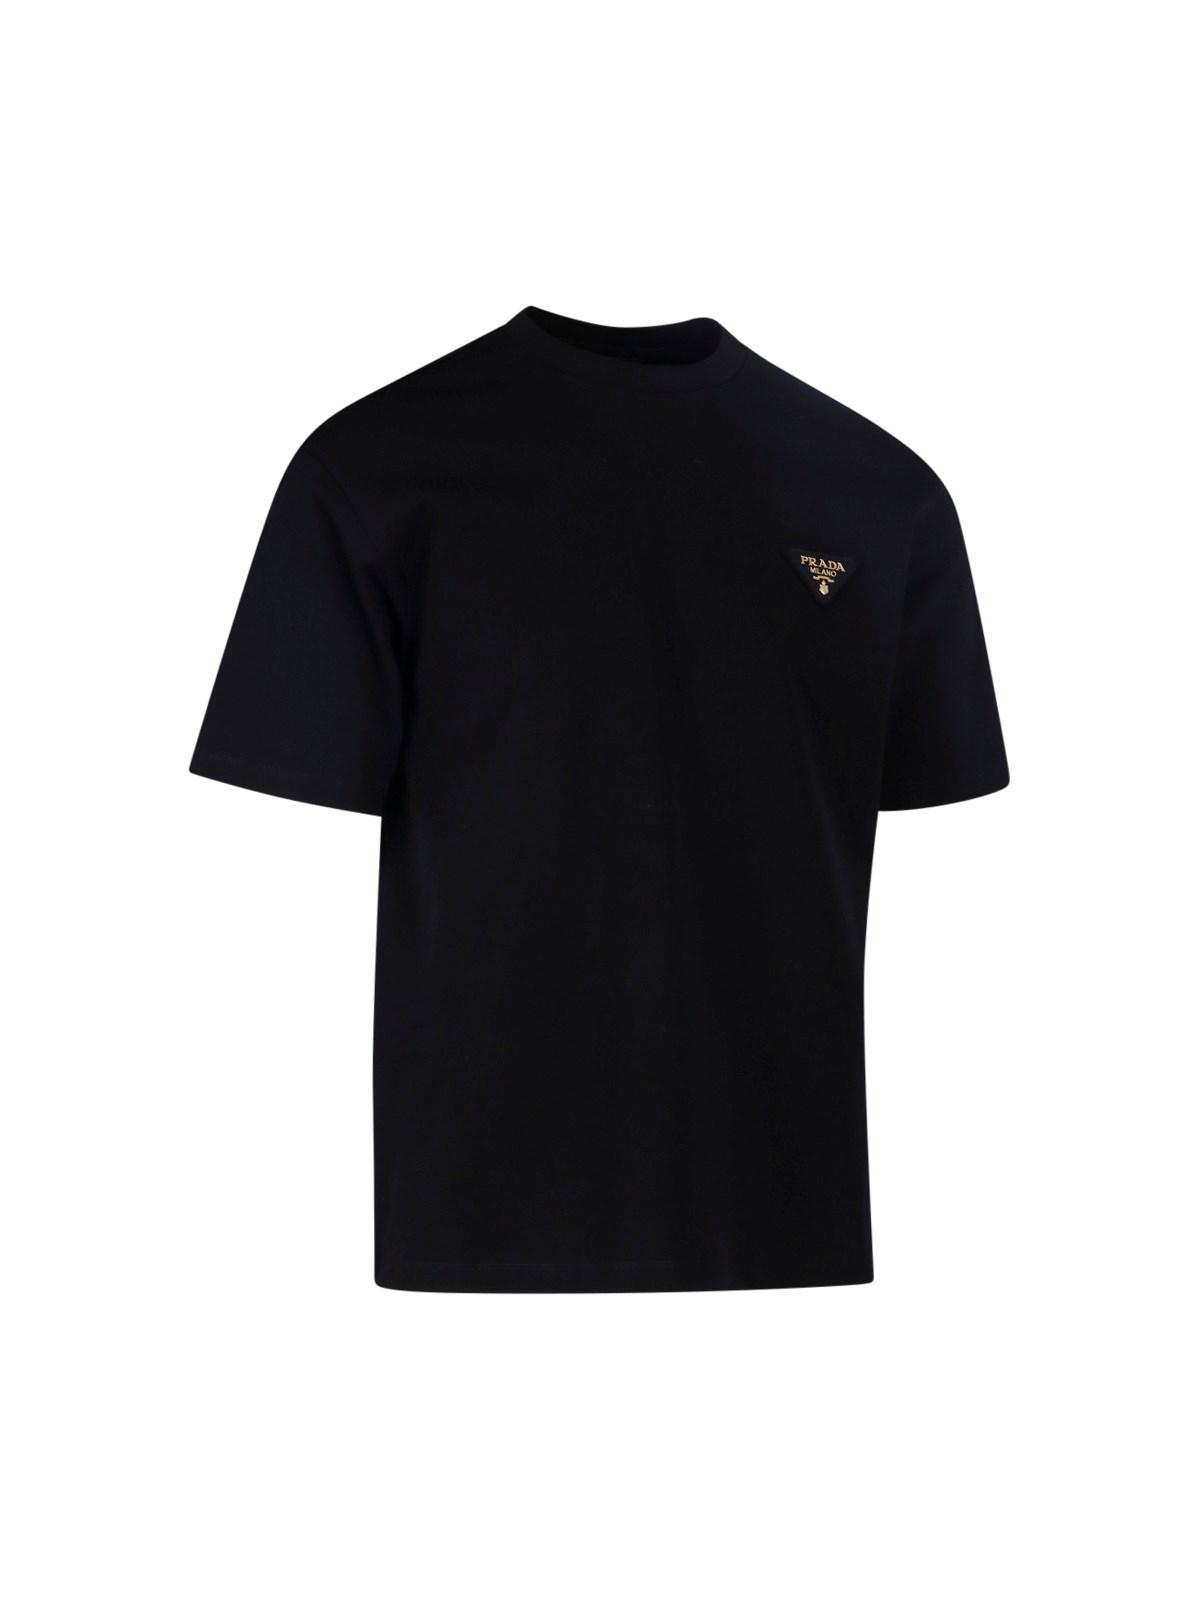 Prada Logo T-shirt in Black for Men | Lyst